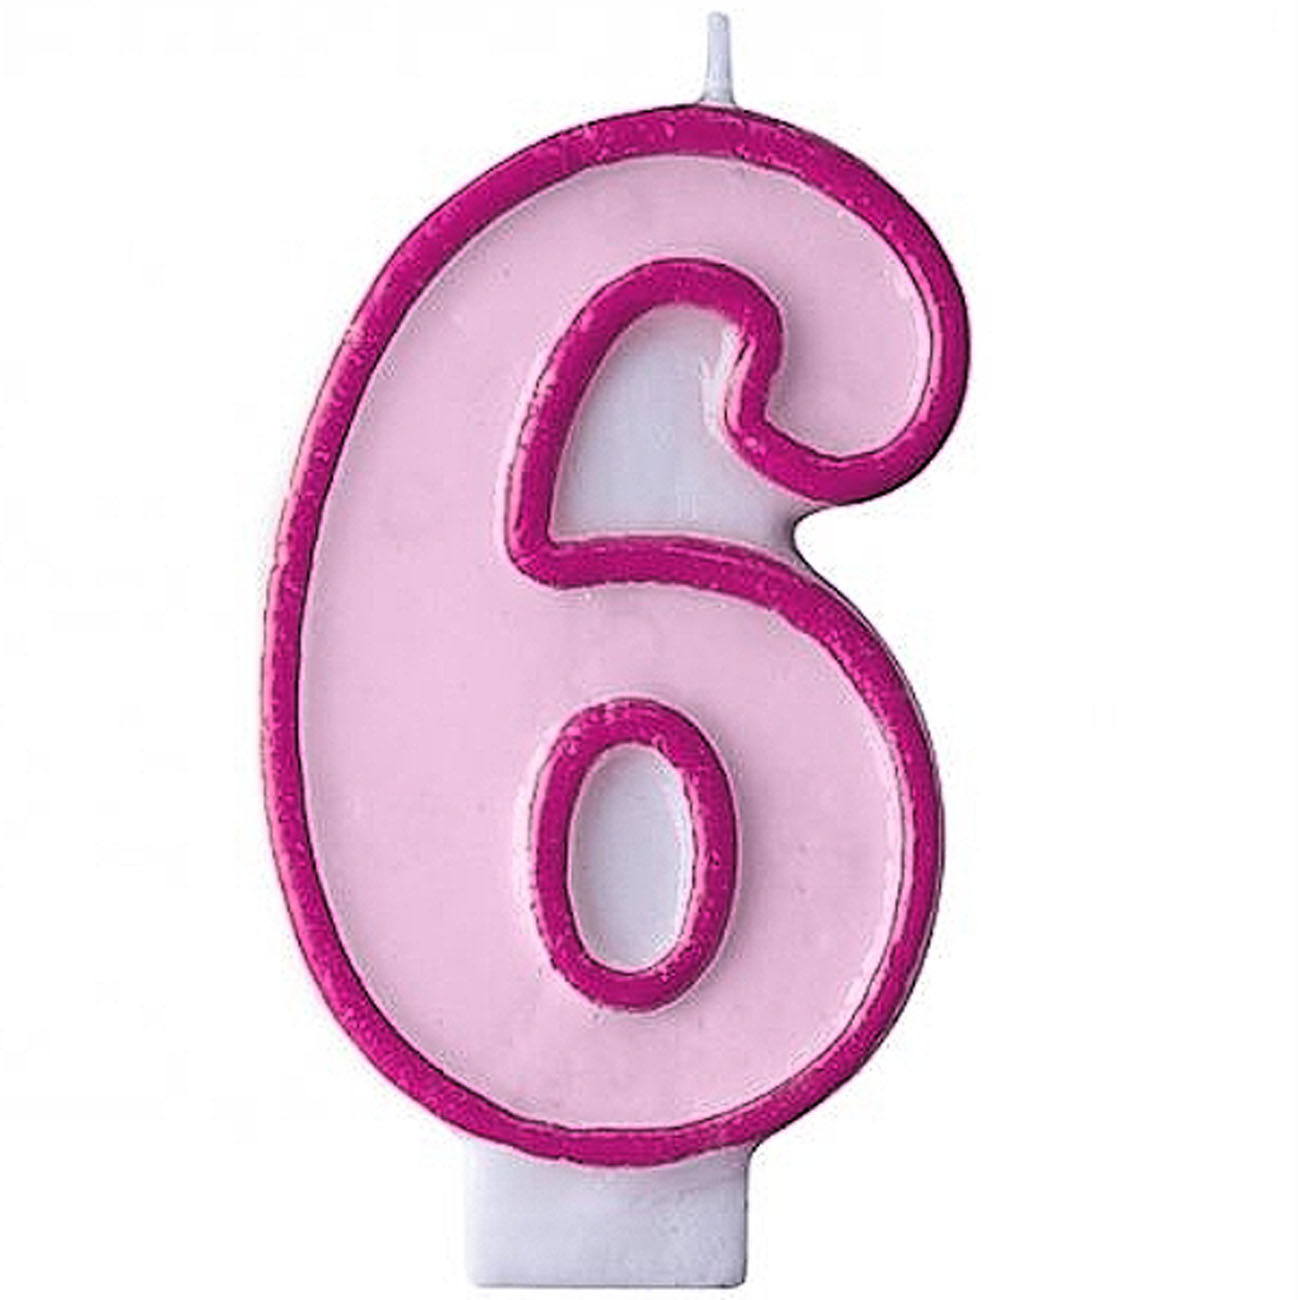 Svíčka dortová - růžová, s číslovkou 6 (1 ks) - SV5312